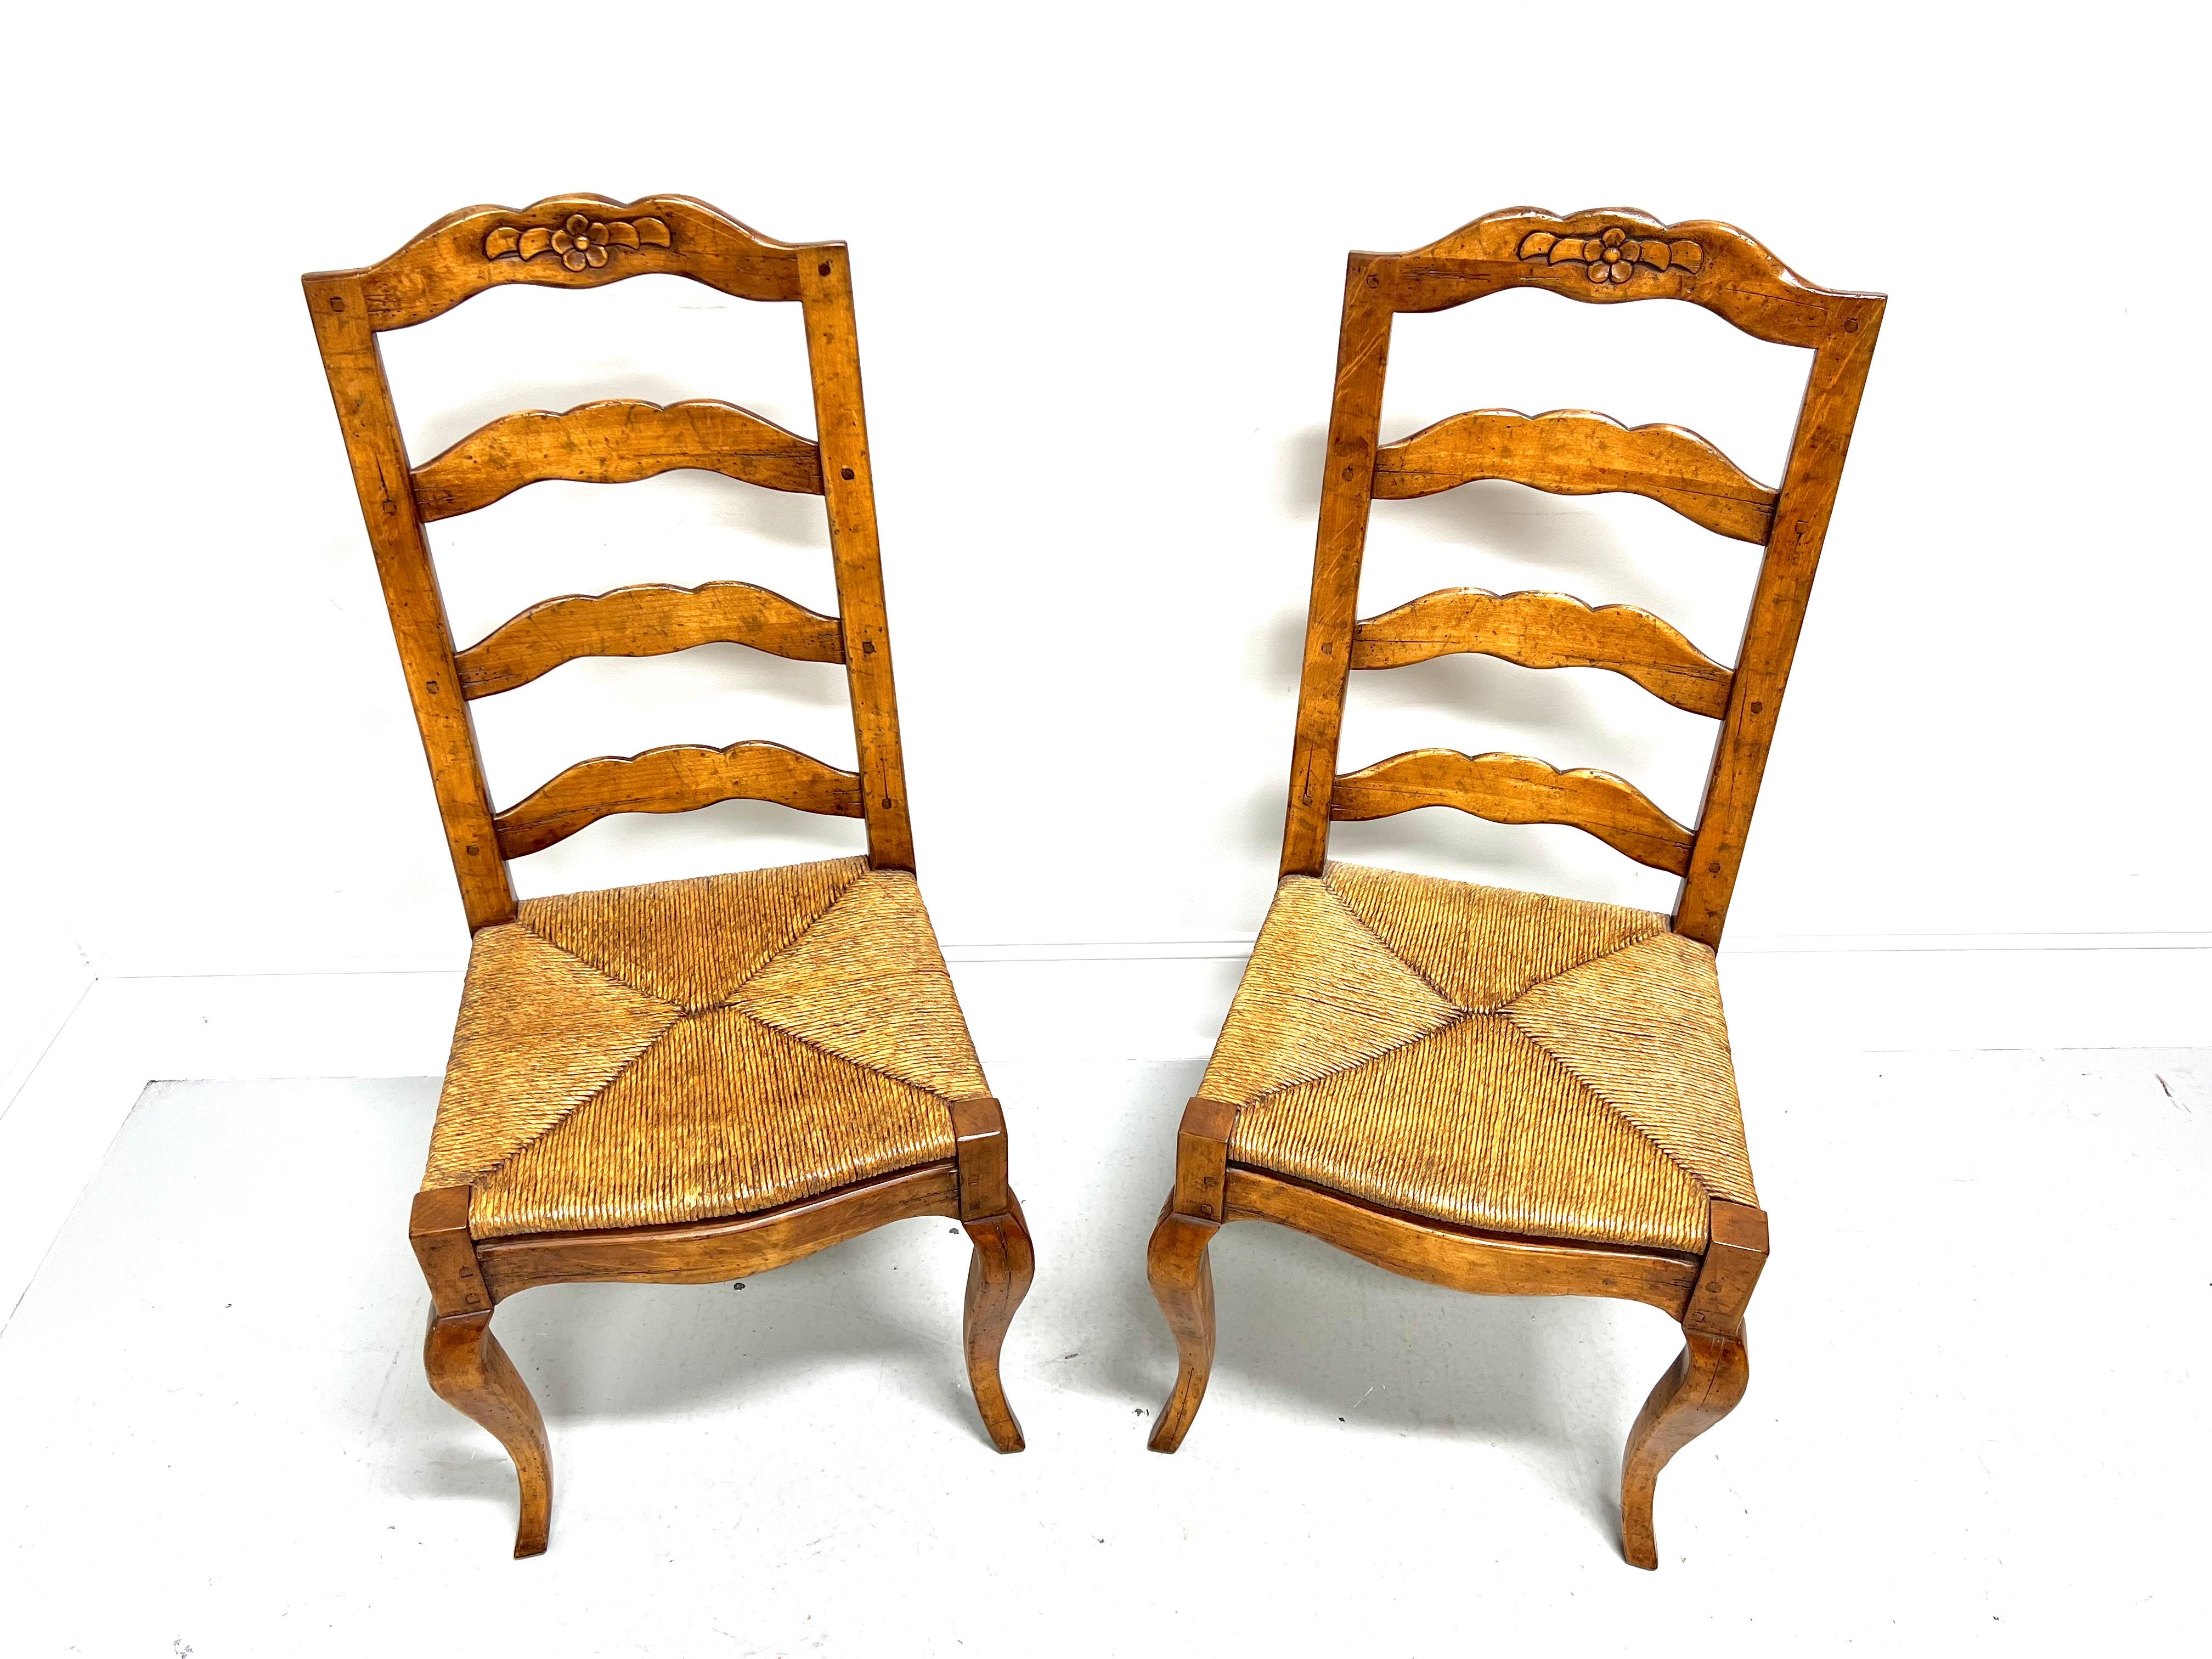 Une paire de chaises d'appoint de style campagne française, sans marque. Bois de noyer massif au fini vieilli, dossier en échelle, crête décorative sculptée, assise en jonc, tablier sculpté et pieds galbés. Fabriqué aux États-Unis, à la fin du 20e